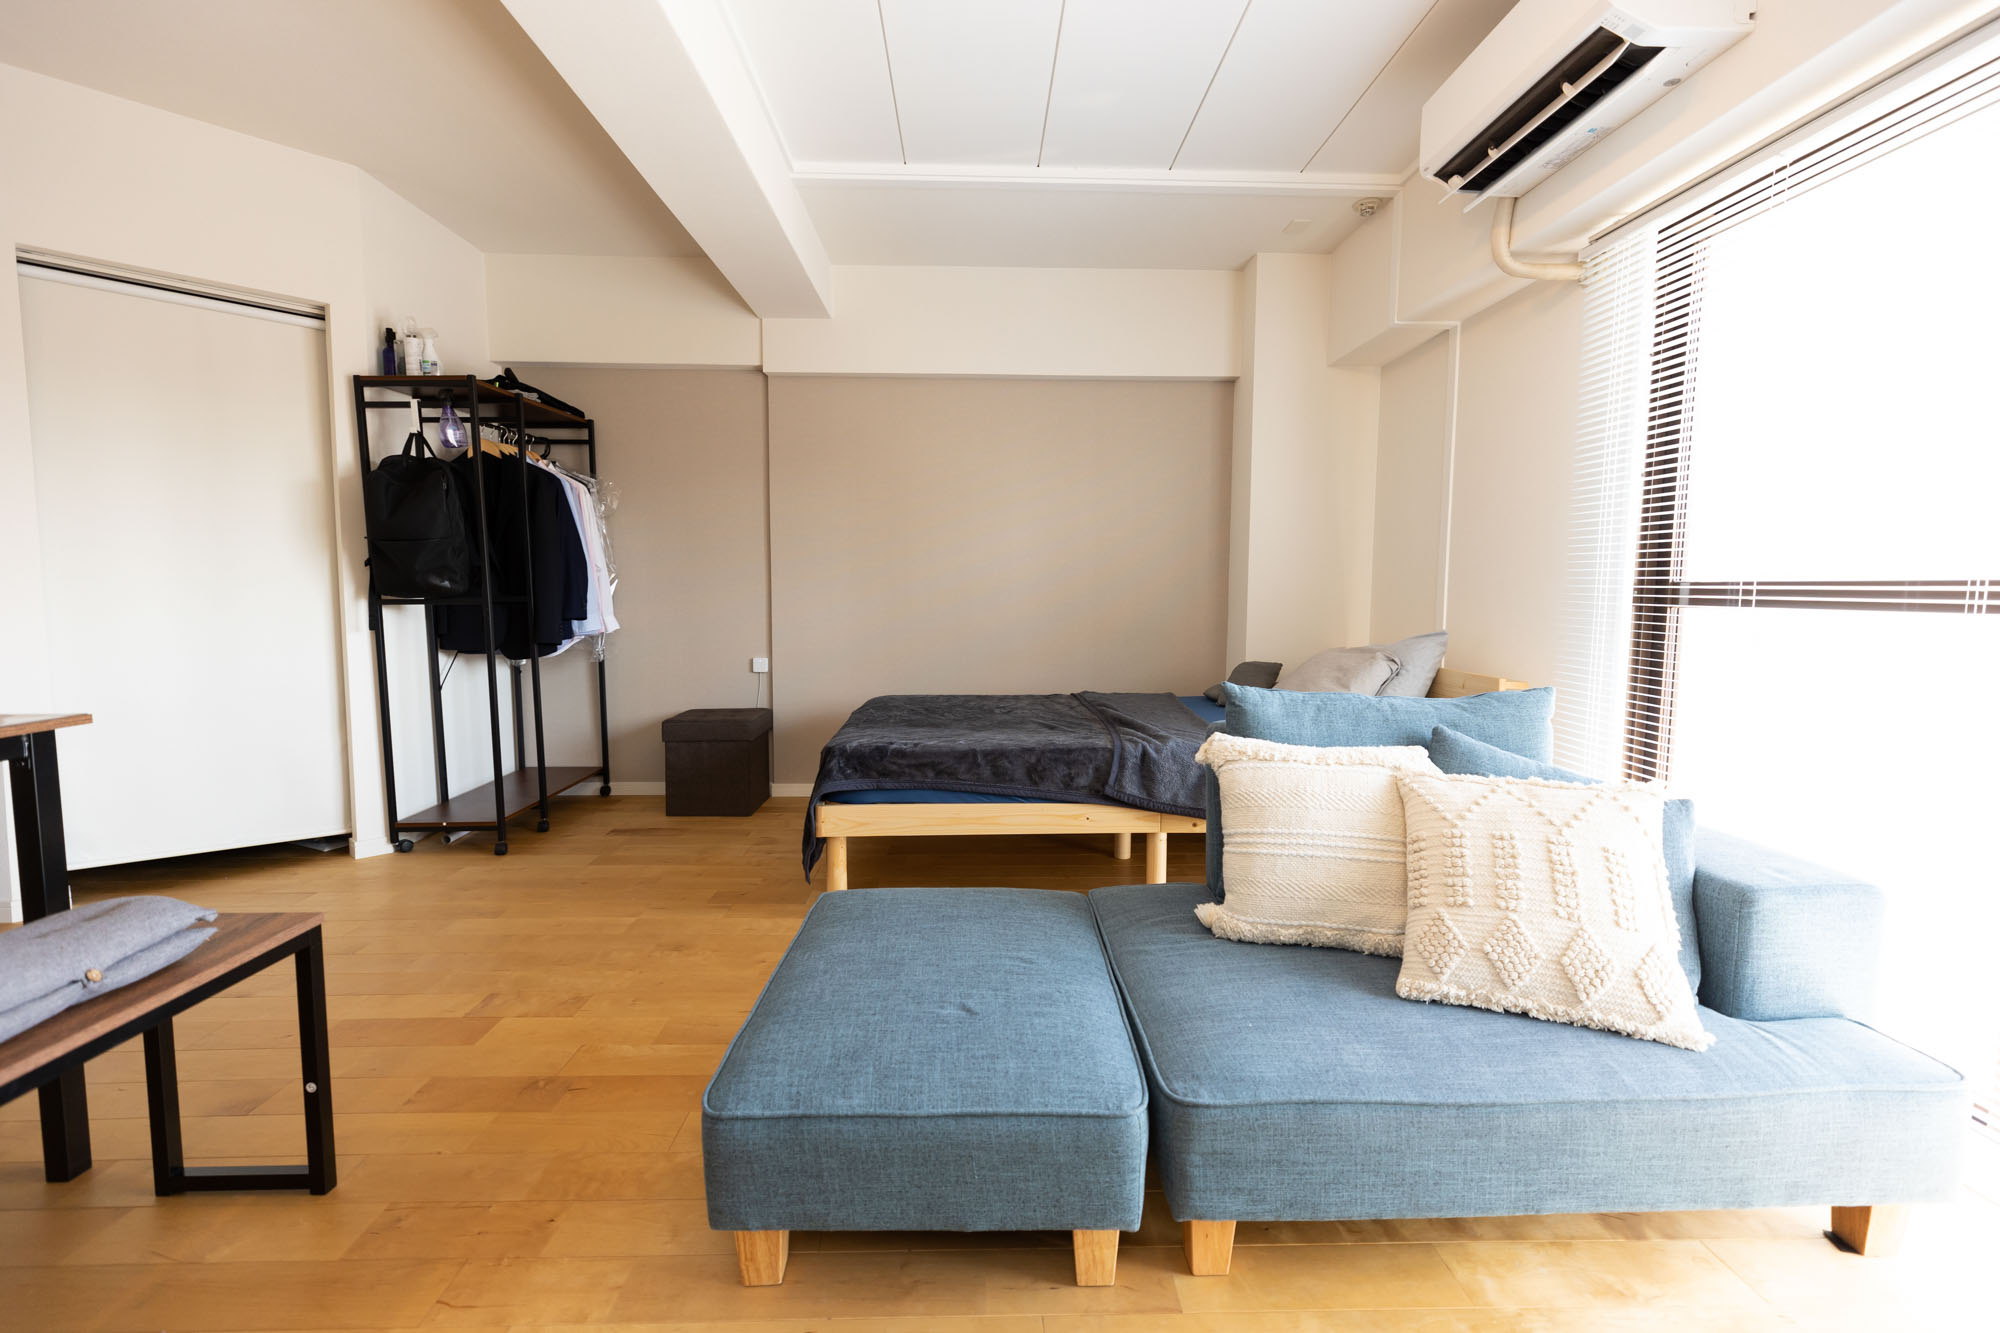 「airbnbのサービスアパートメントのような雰囲気」を意識されているというNaoyaさん。広いワンルームを家具の配置によってゆるくゾーン分けして使われています。